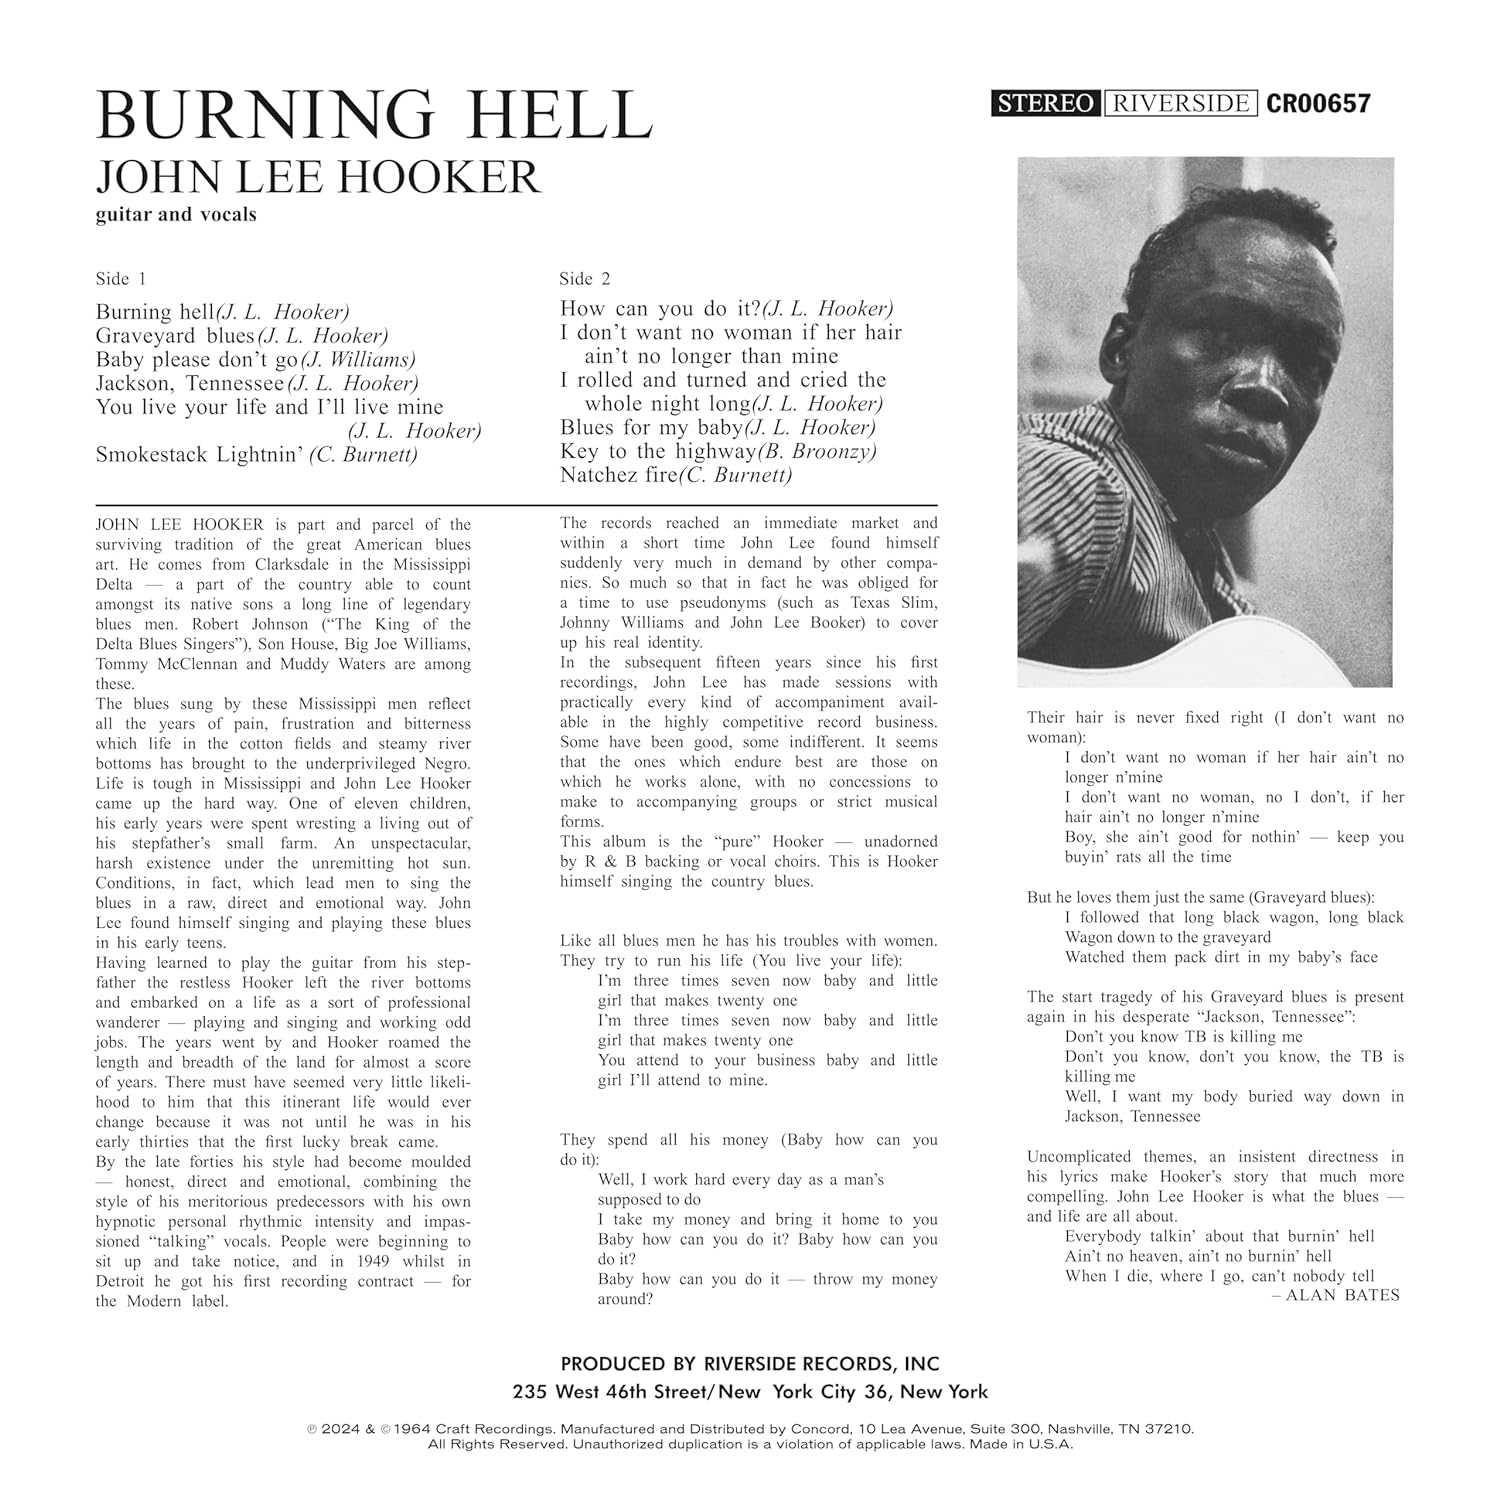 HOOKER JOHN LEE – BURNING HELL craft LP